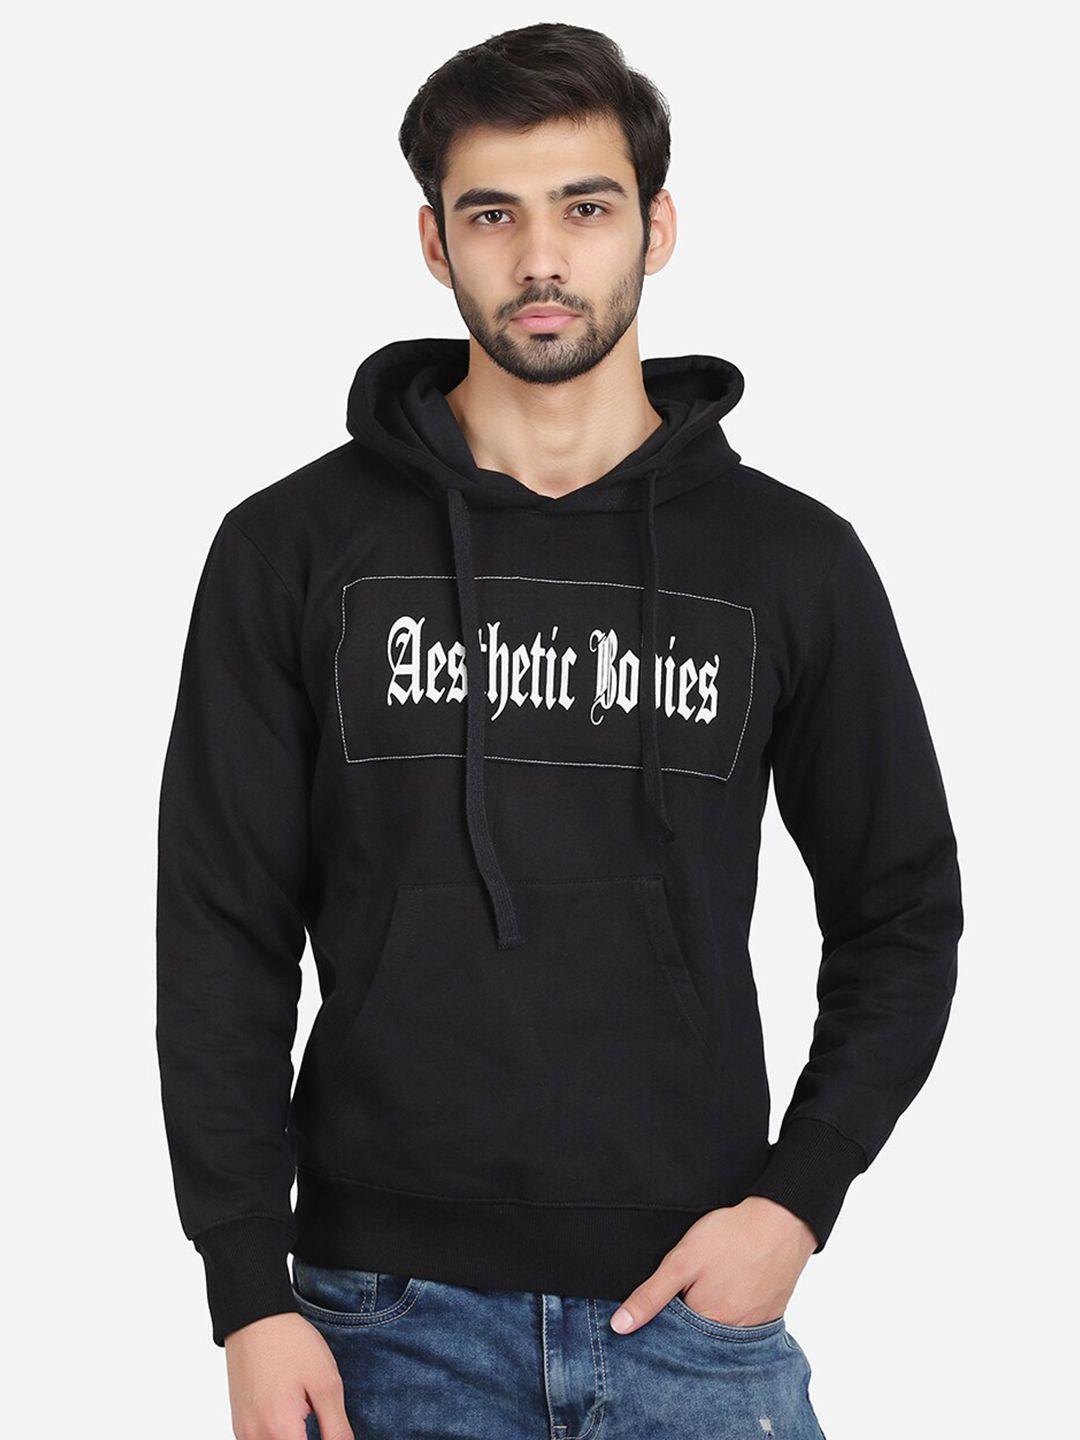 aesthetic-bodies-men-black-printed-hooded-sweatshirt